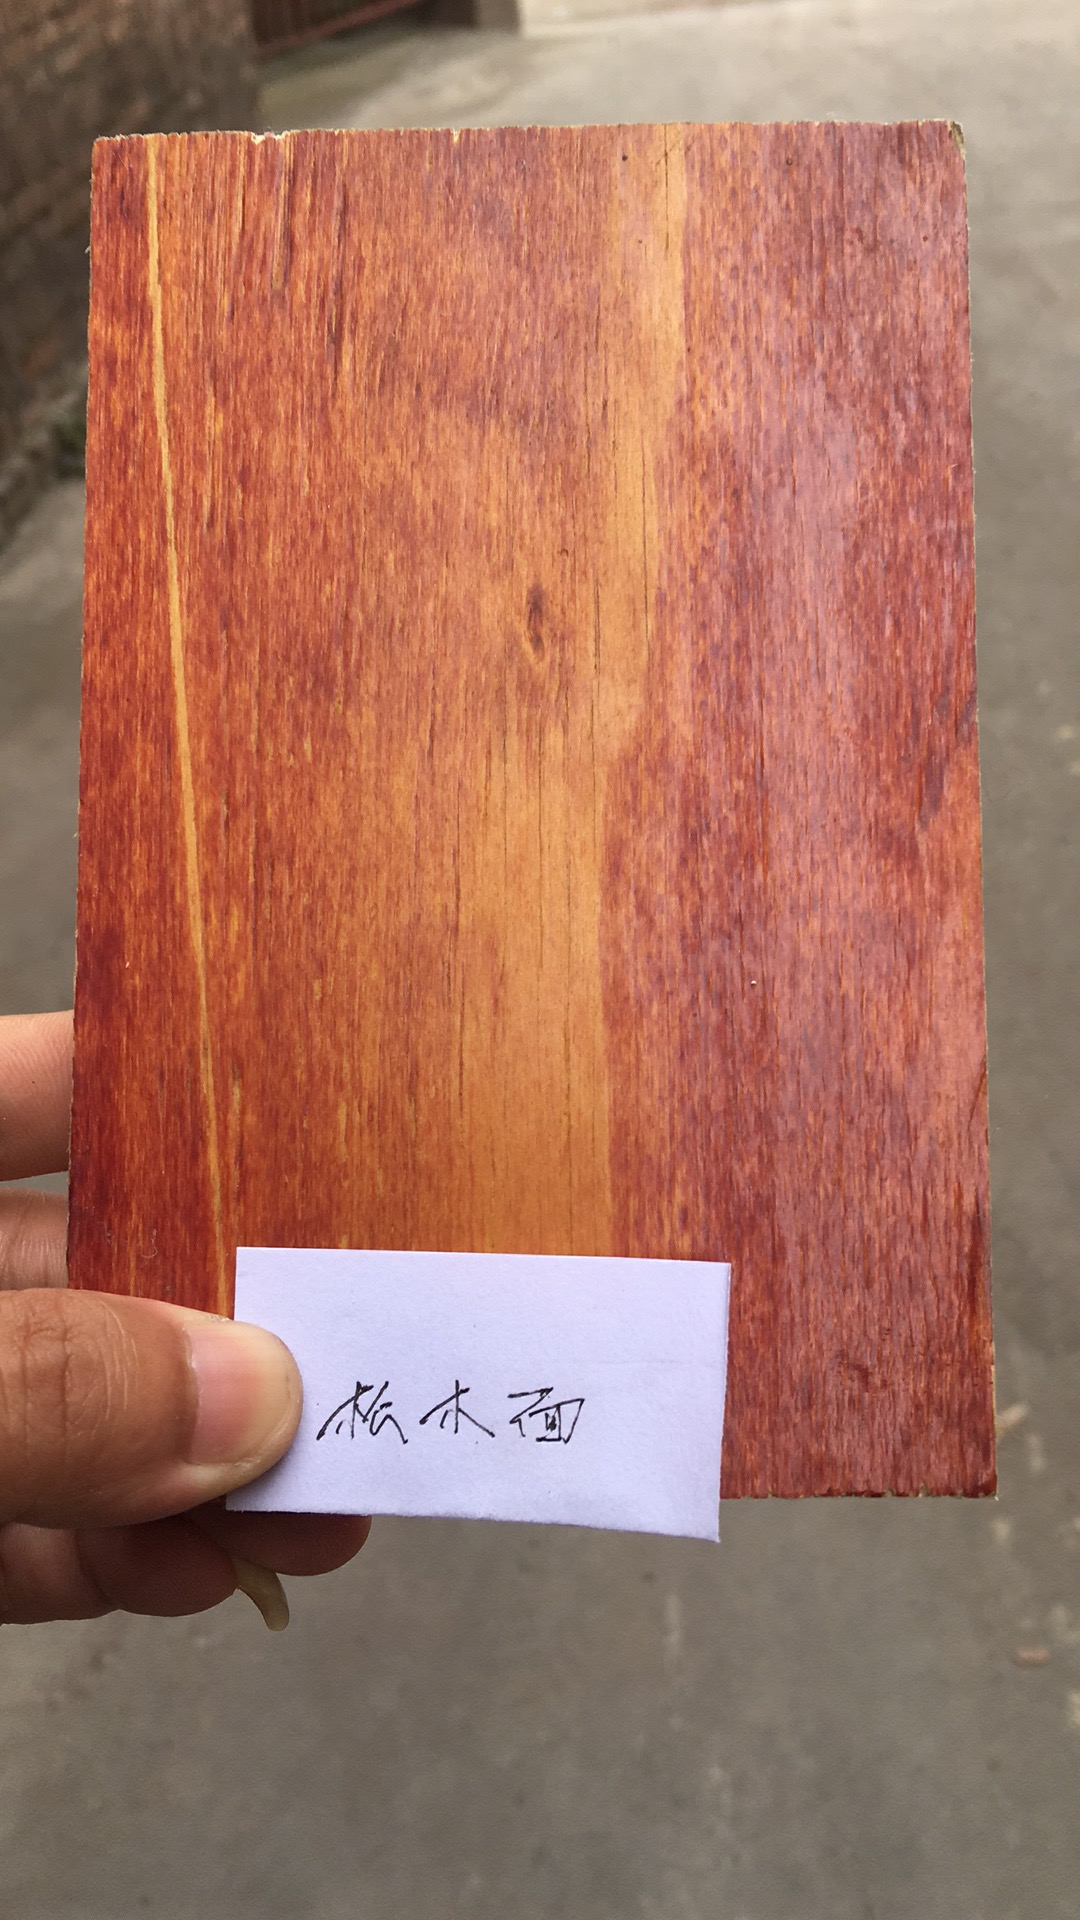 广西建筑木模板覆膜板厂家直销 供应各规格的建筑模板覆膜板 松木面覆膜板图片